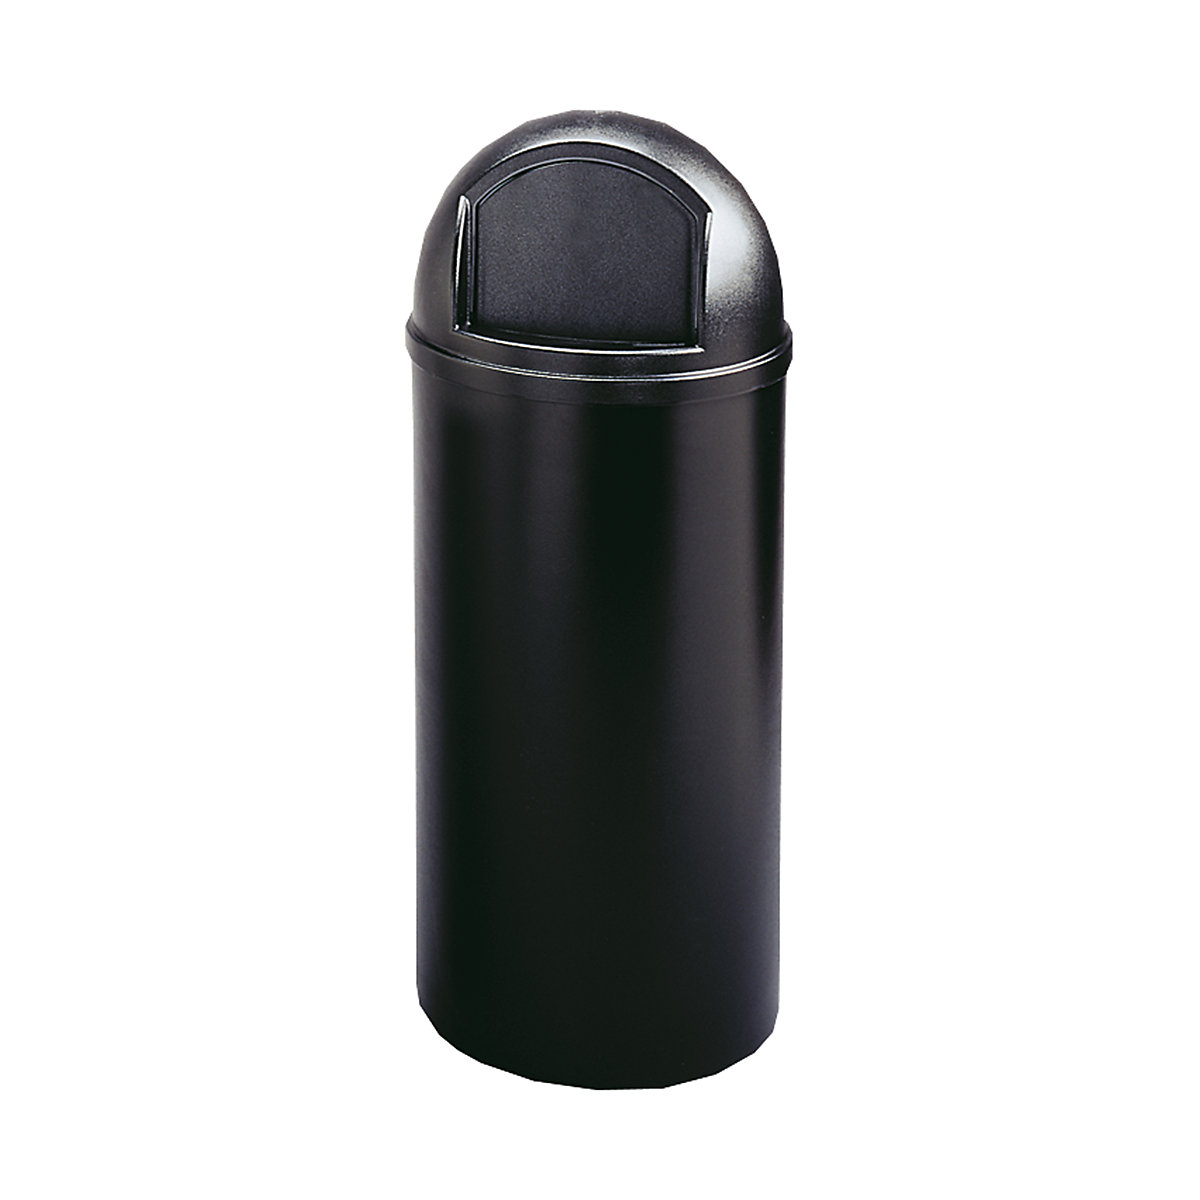 Rubbermaid – Poubelle (en PE) ignifuge, capacité 57 l, h x Ø 930 x 390 mm, coloris noir